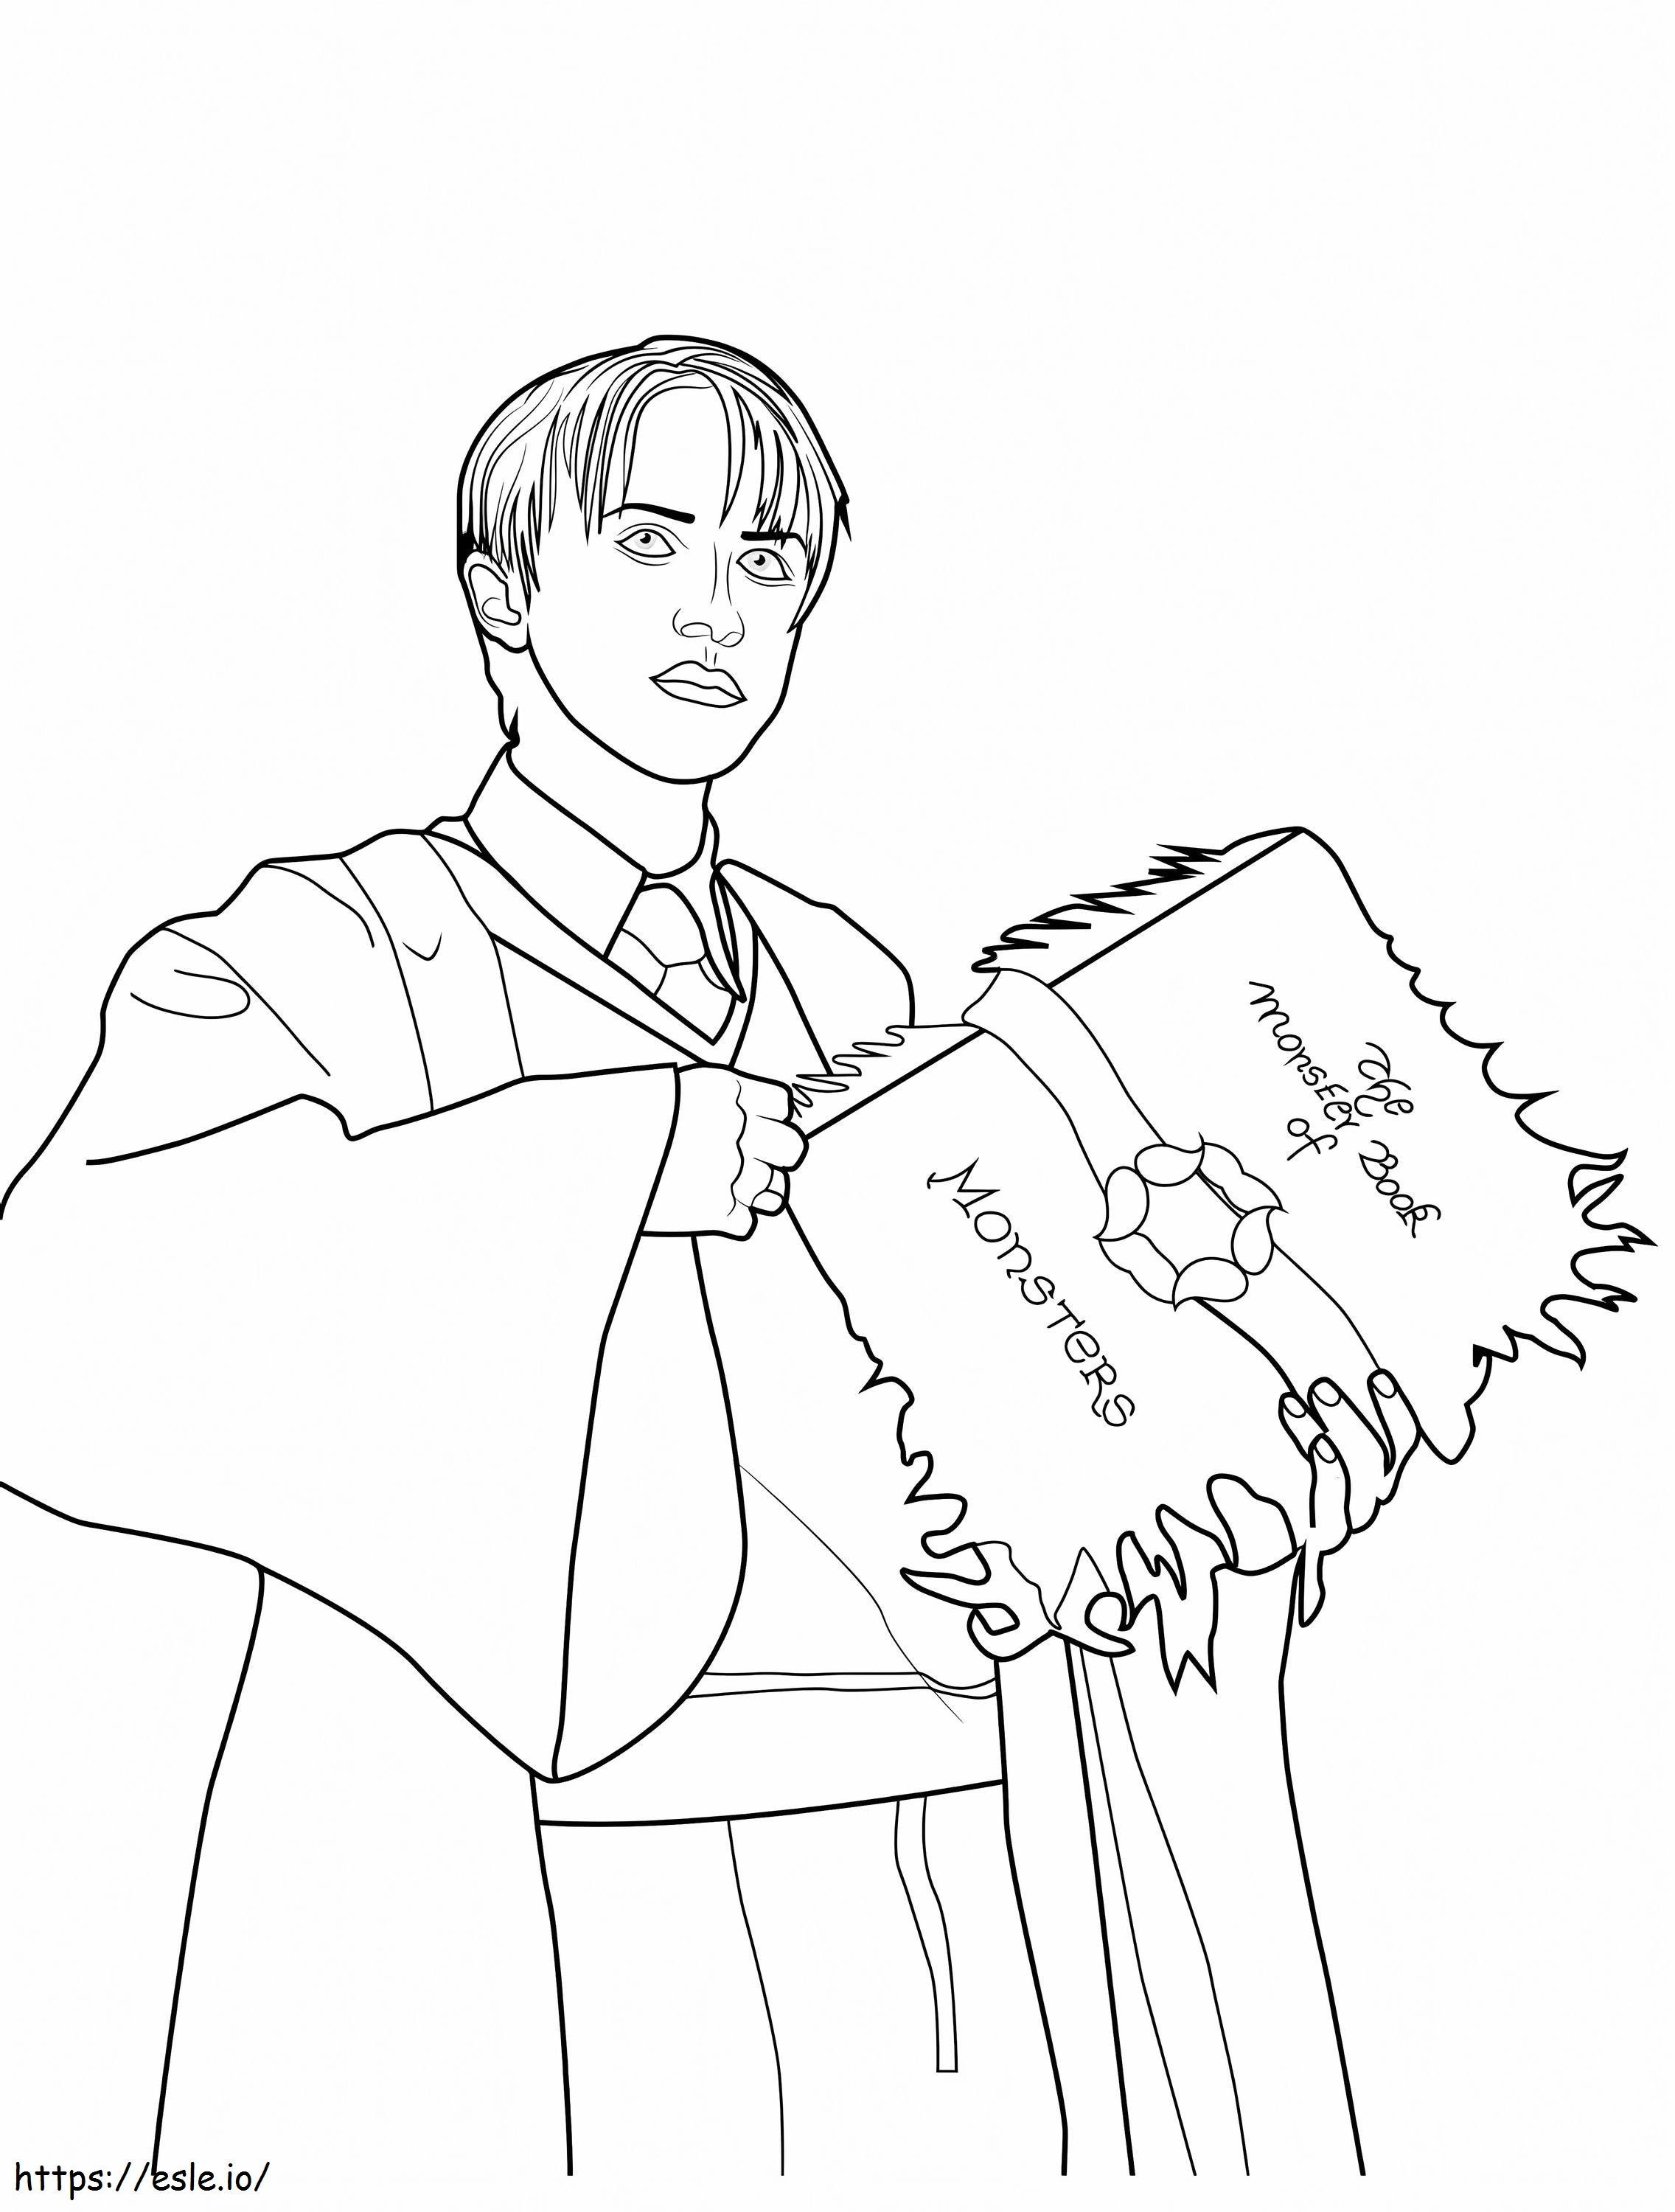 Draco Malfoy hält ein Buch ausmalbilder